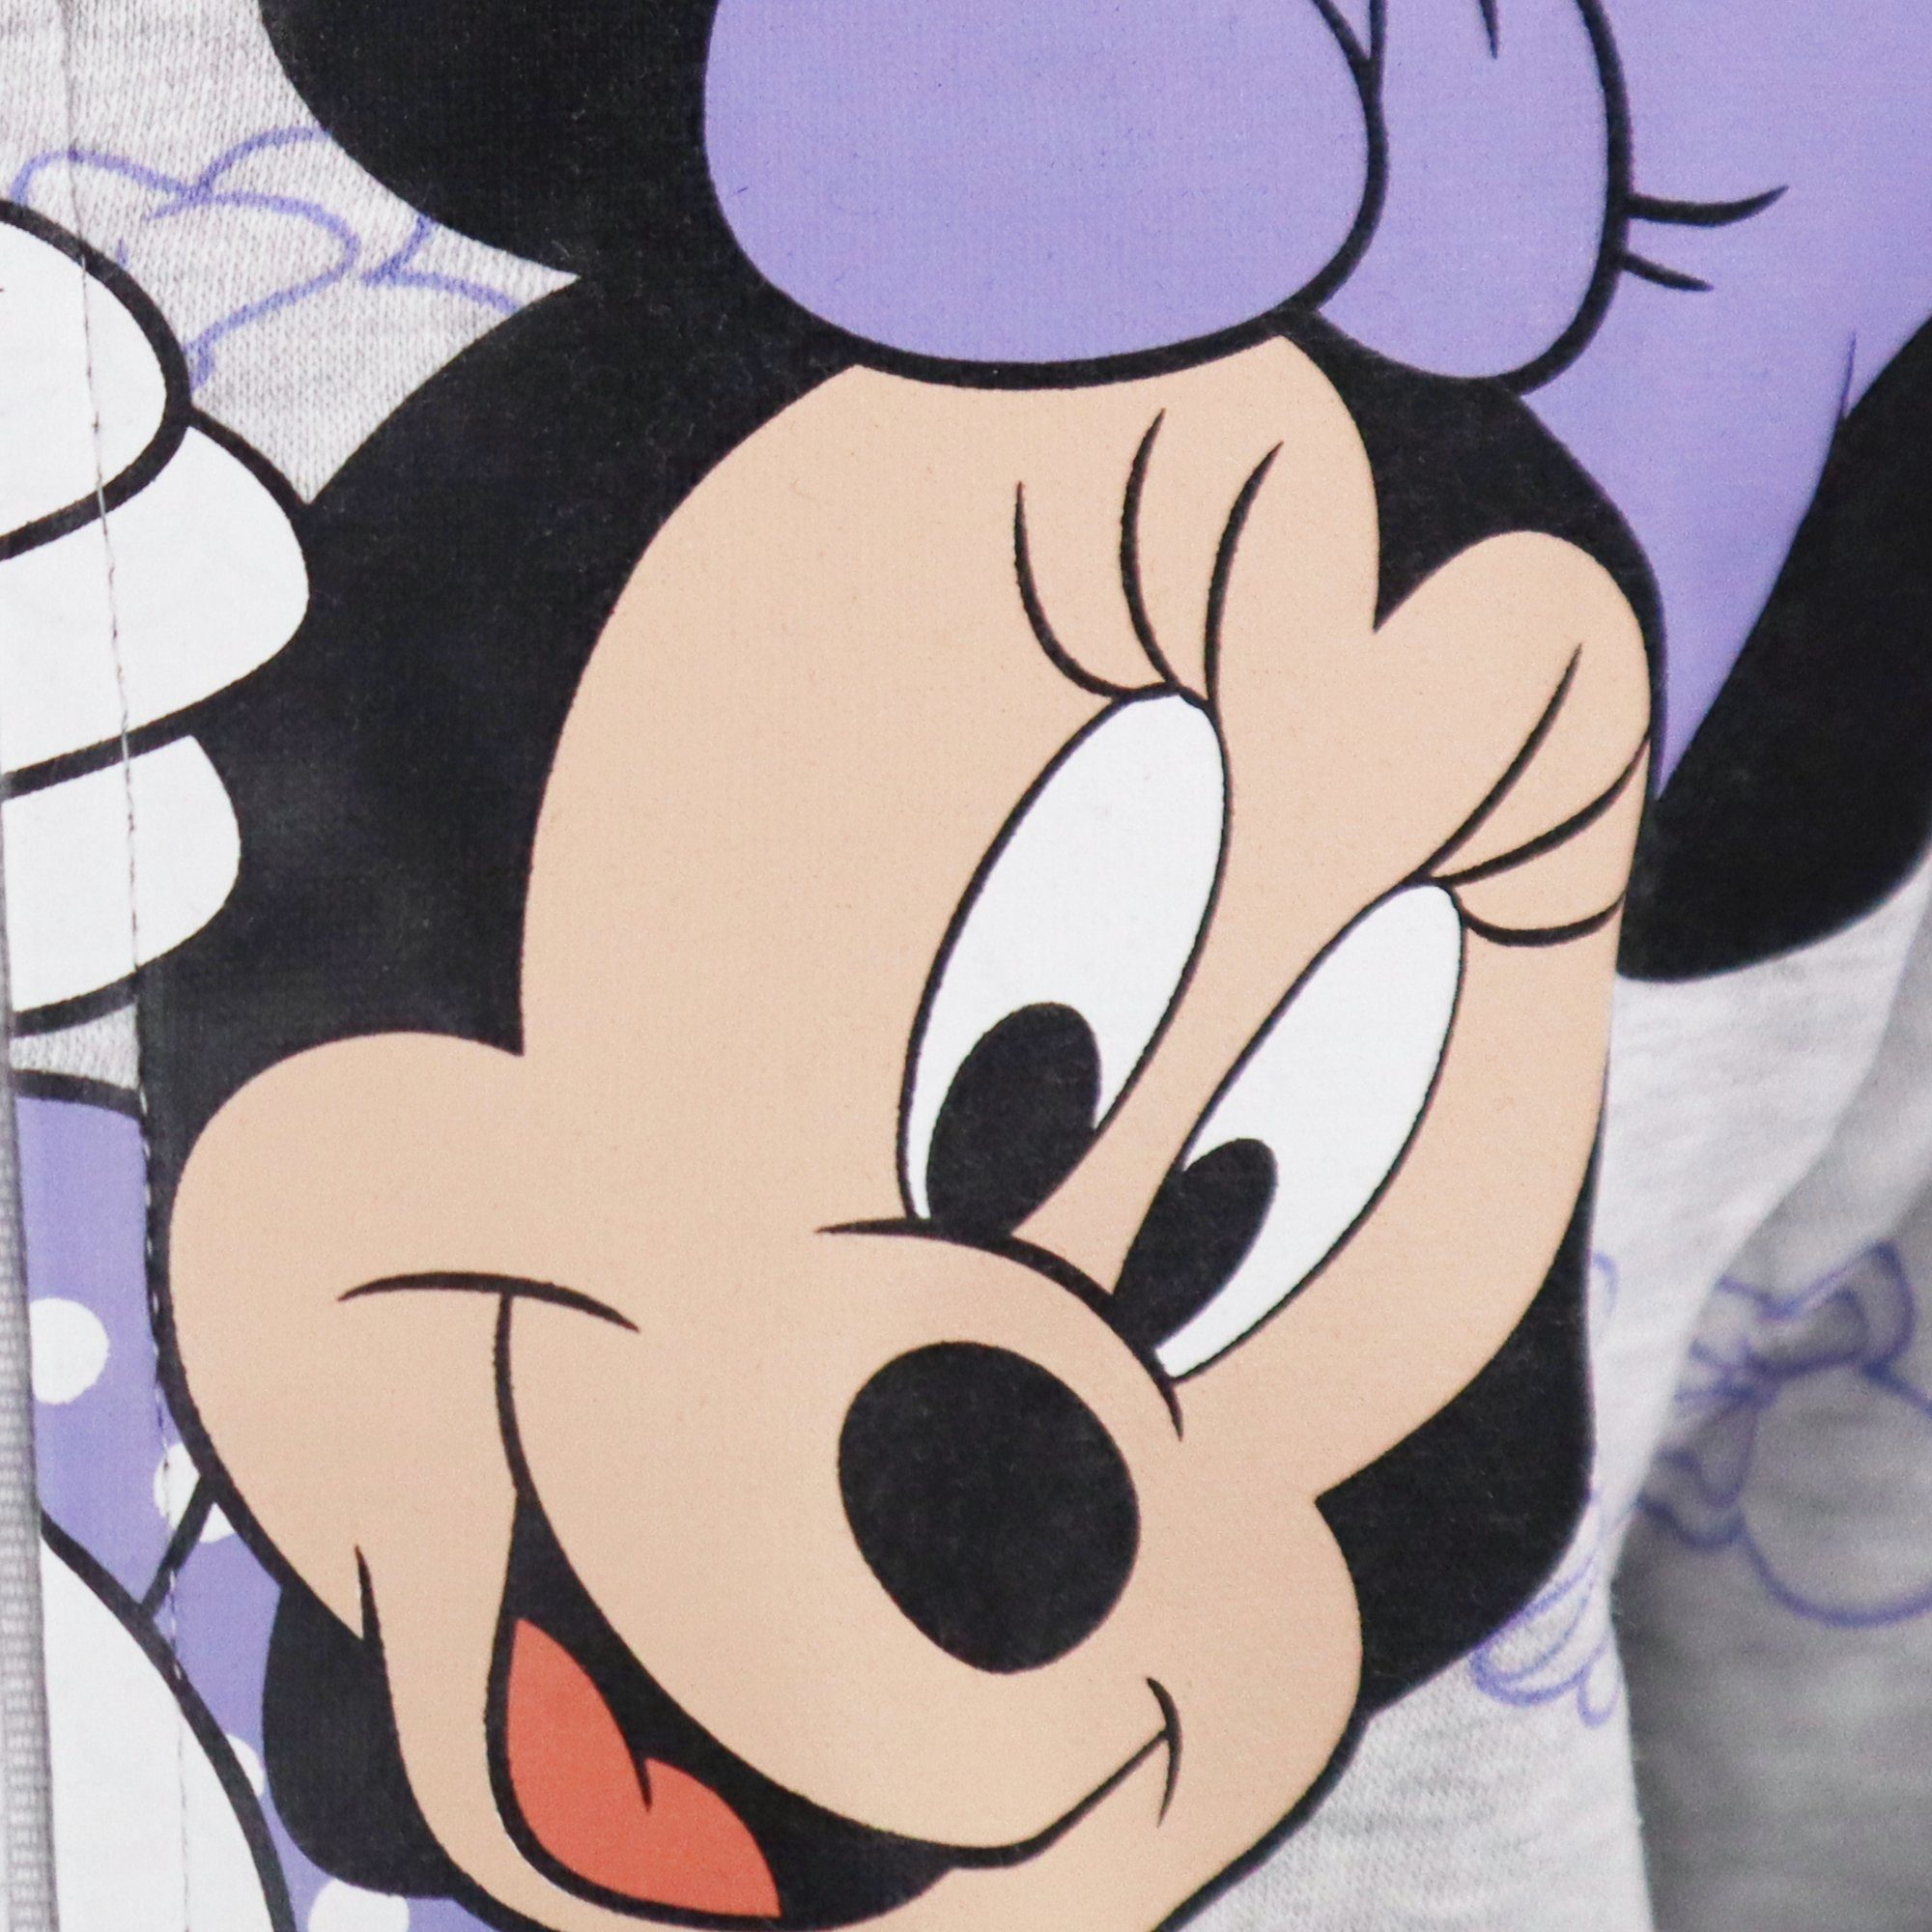 Pulli Gr. Maus Sweater Pullover Grau Disney Kinder 98-128 Reißverschluss Disney Mädchen Minnie